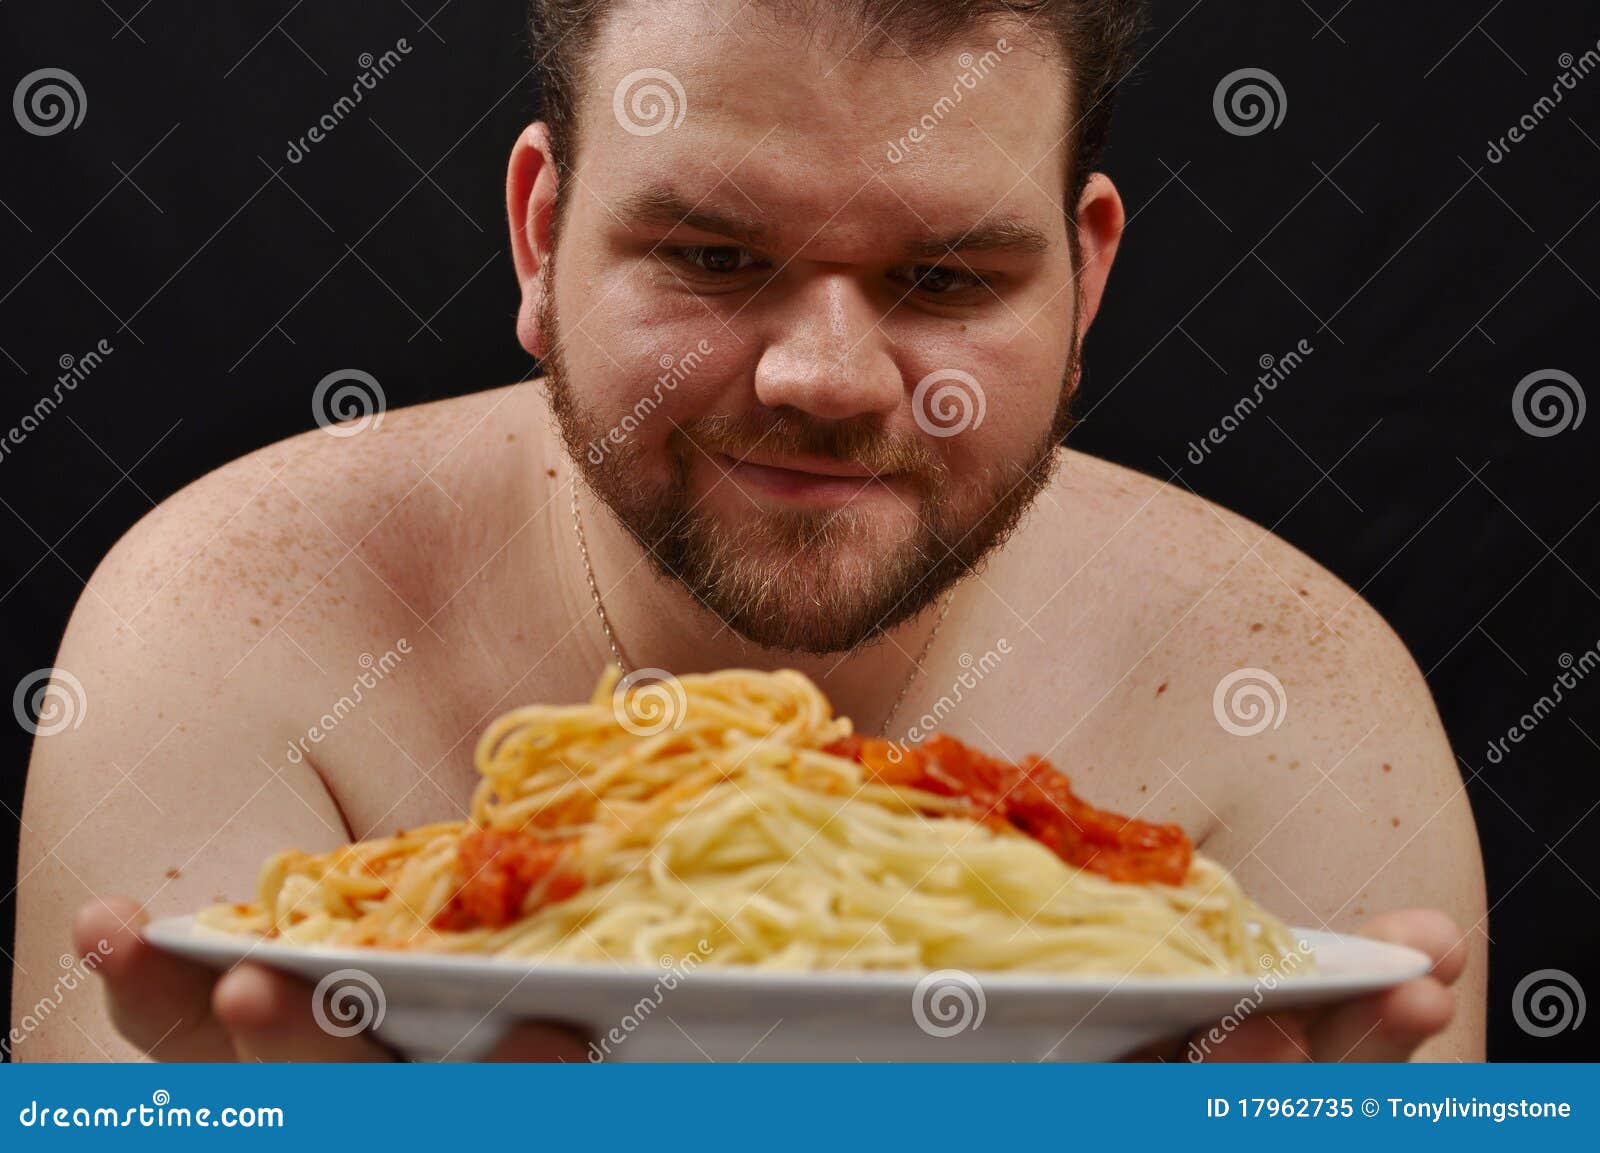 Italian Fat Man 76